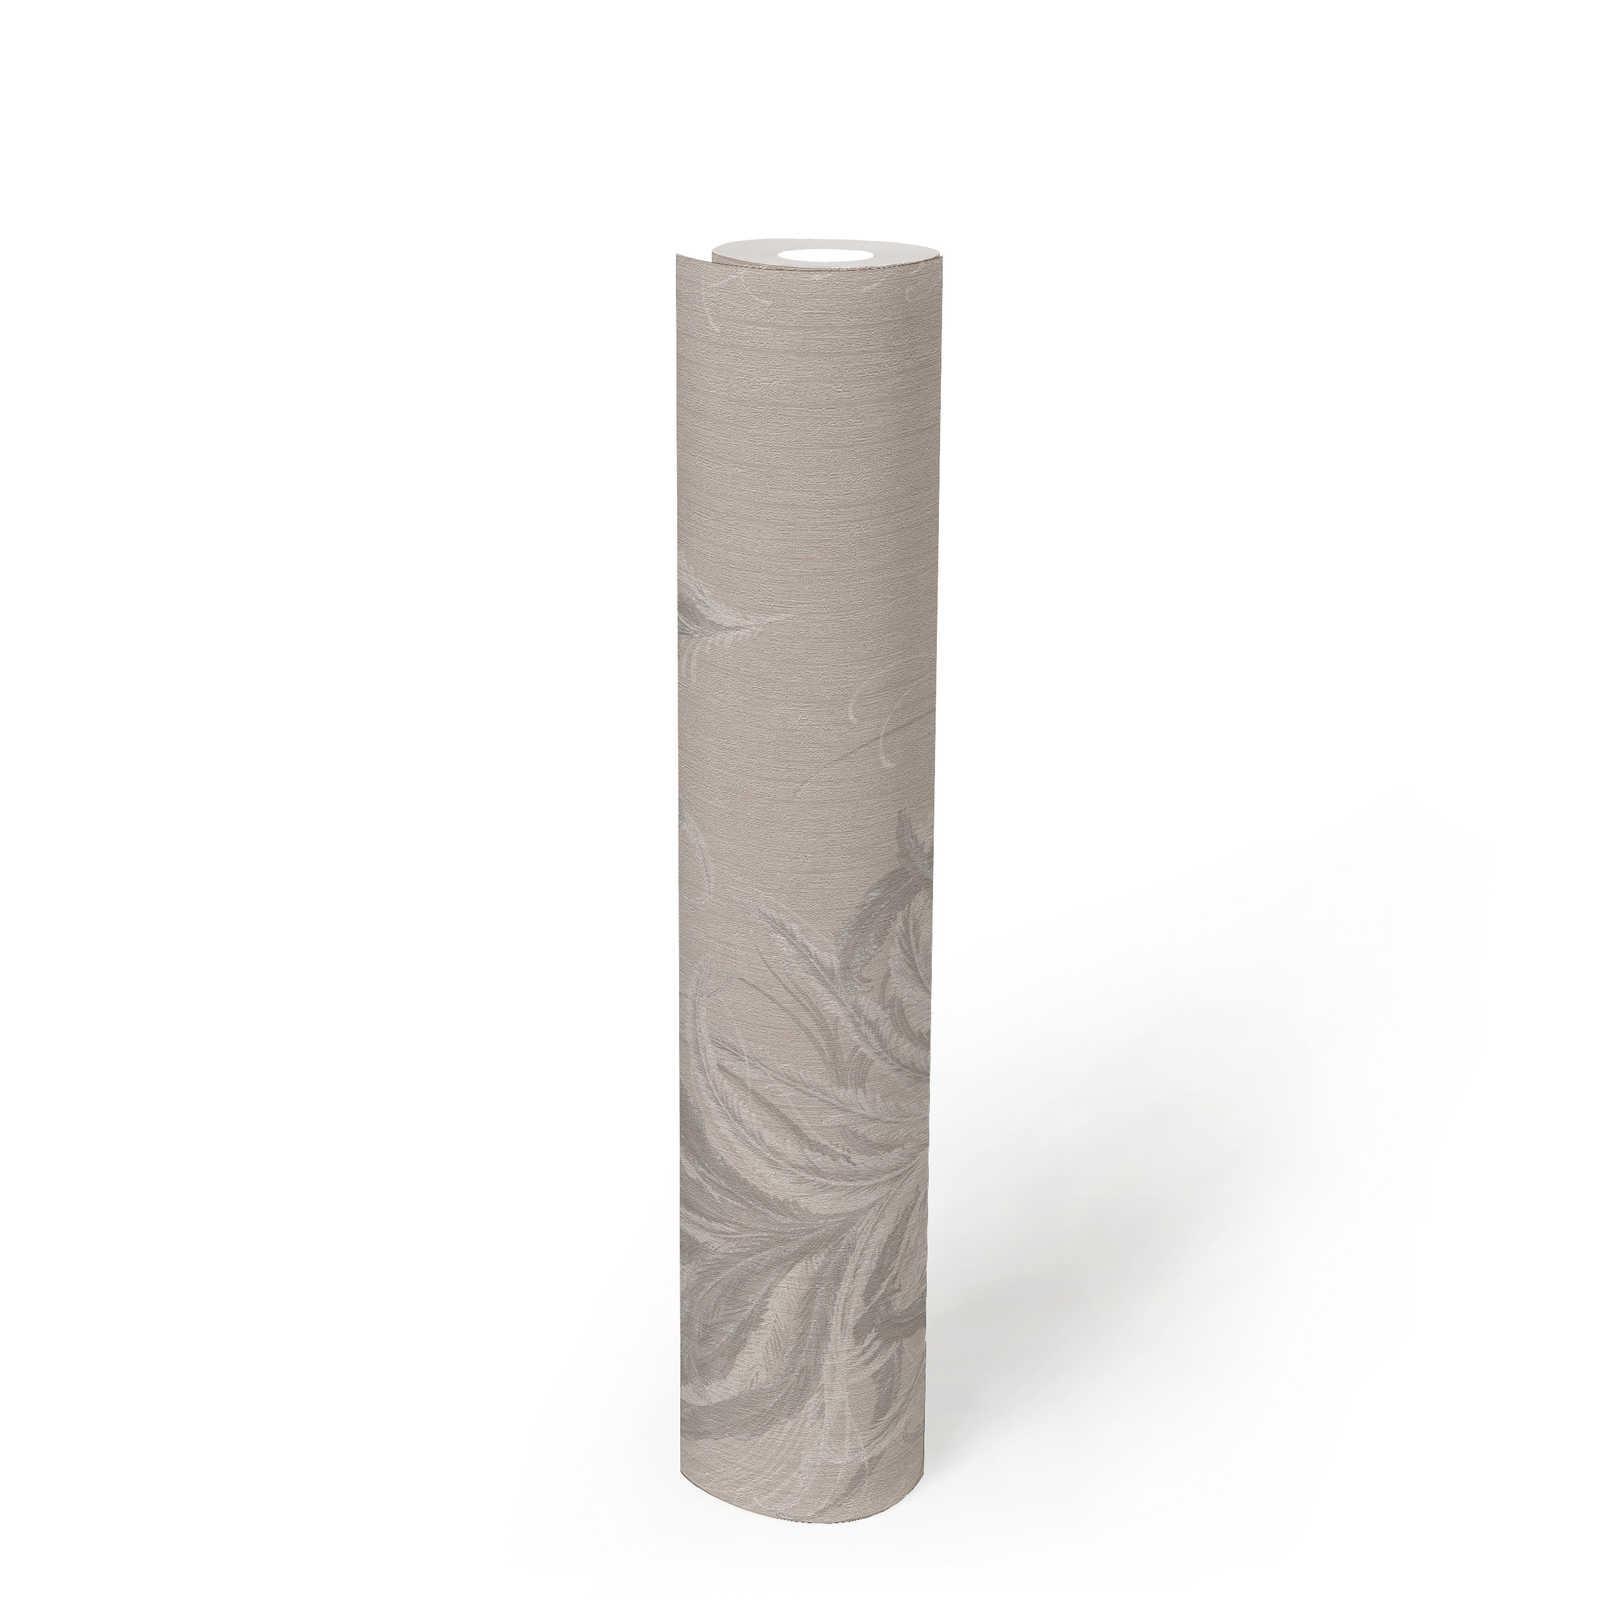             Vliestapete mit Federn Design & Struktur Glanzeffekt – Grau, Weiß
        